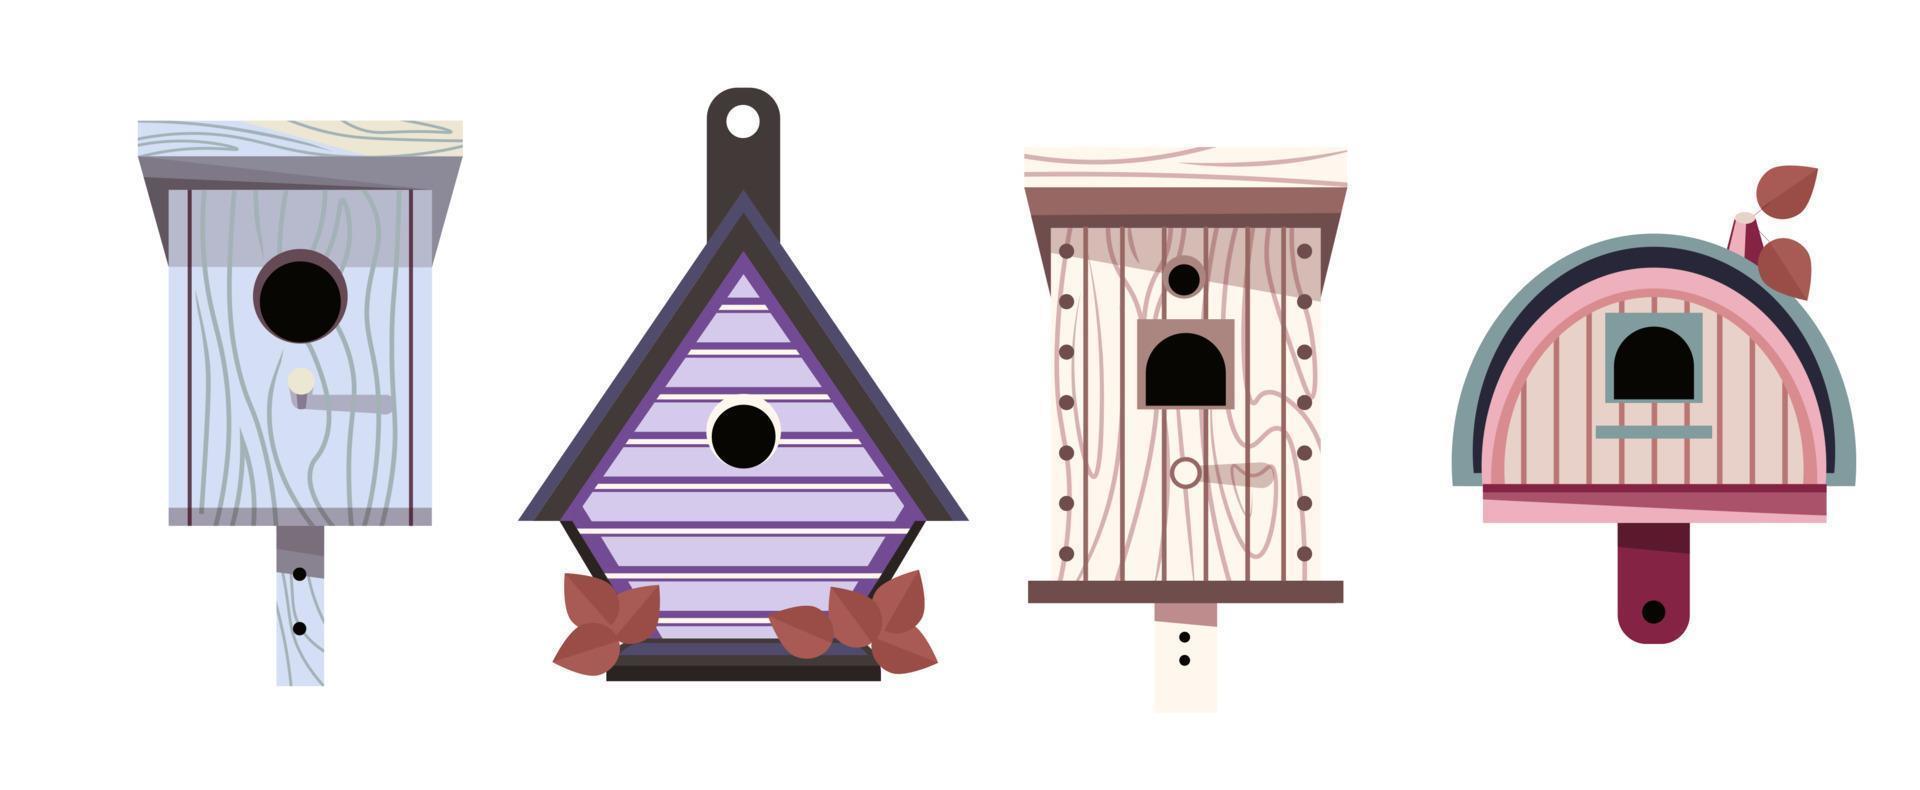 Vogelhäuschen, hölzernes Vogelhaus für die Wintersaison vektor